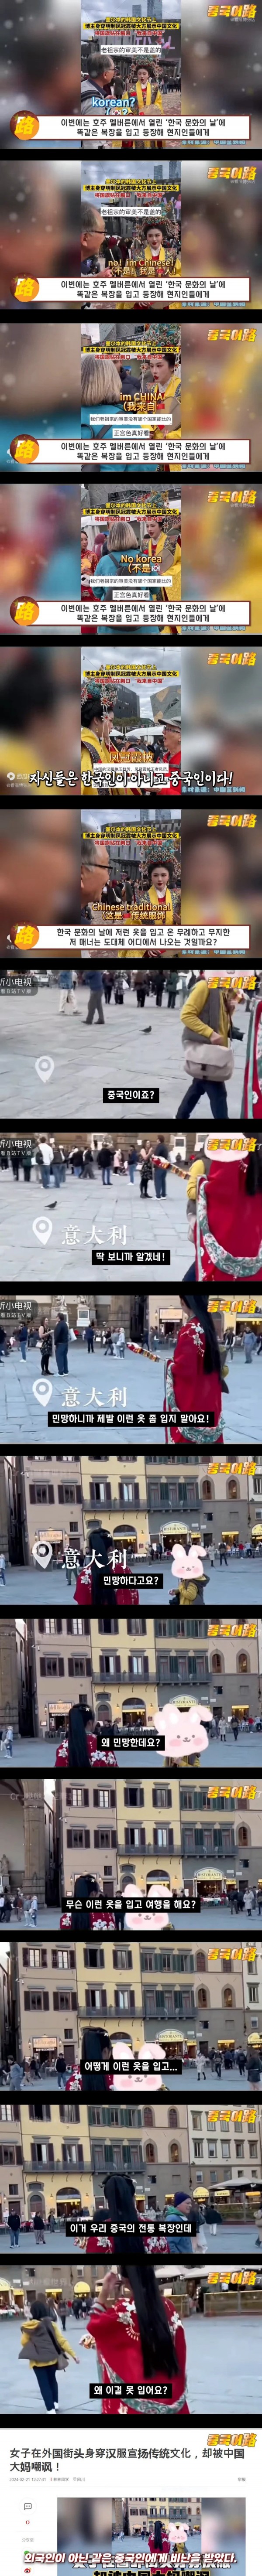 눈물겨운 중국의 전통 의복 홍보 